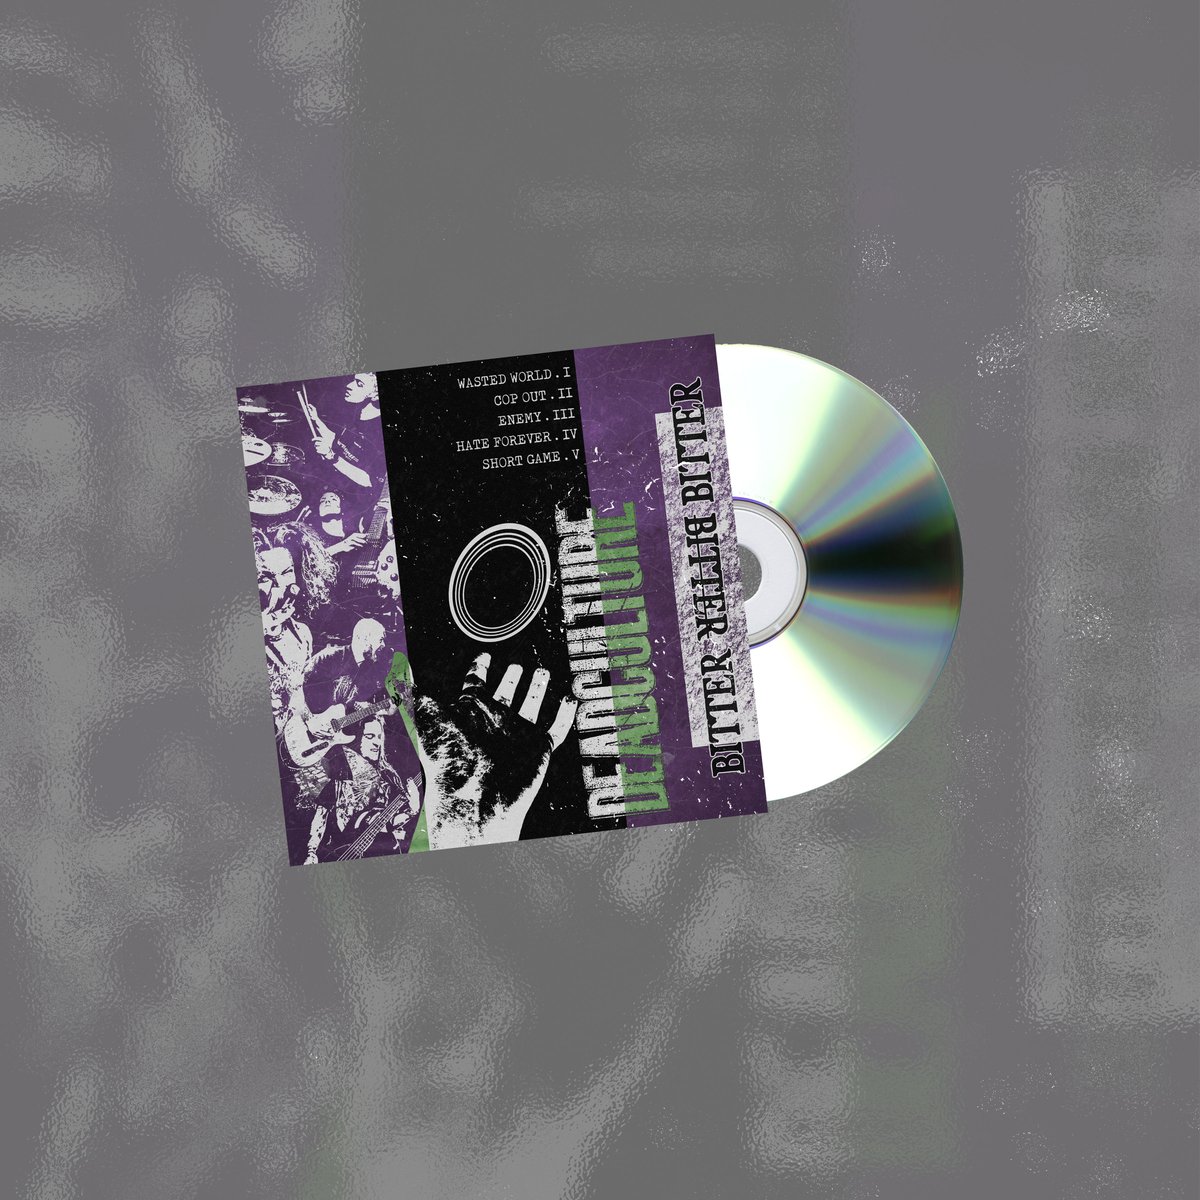 Image of “Bitter” CD